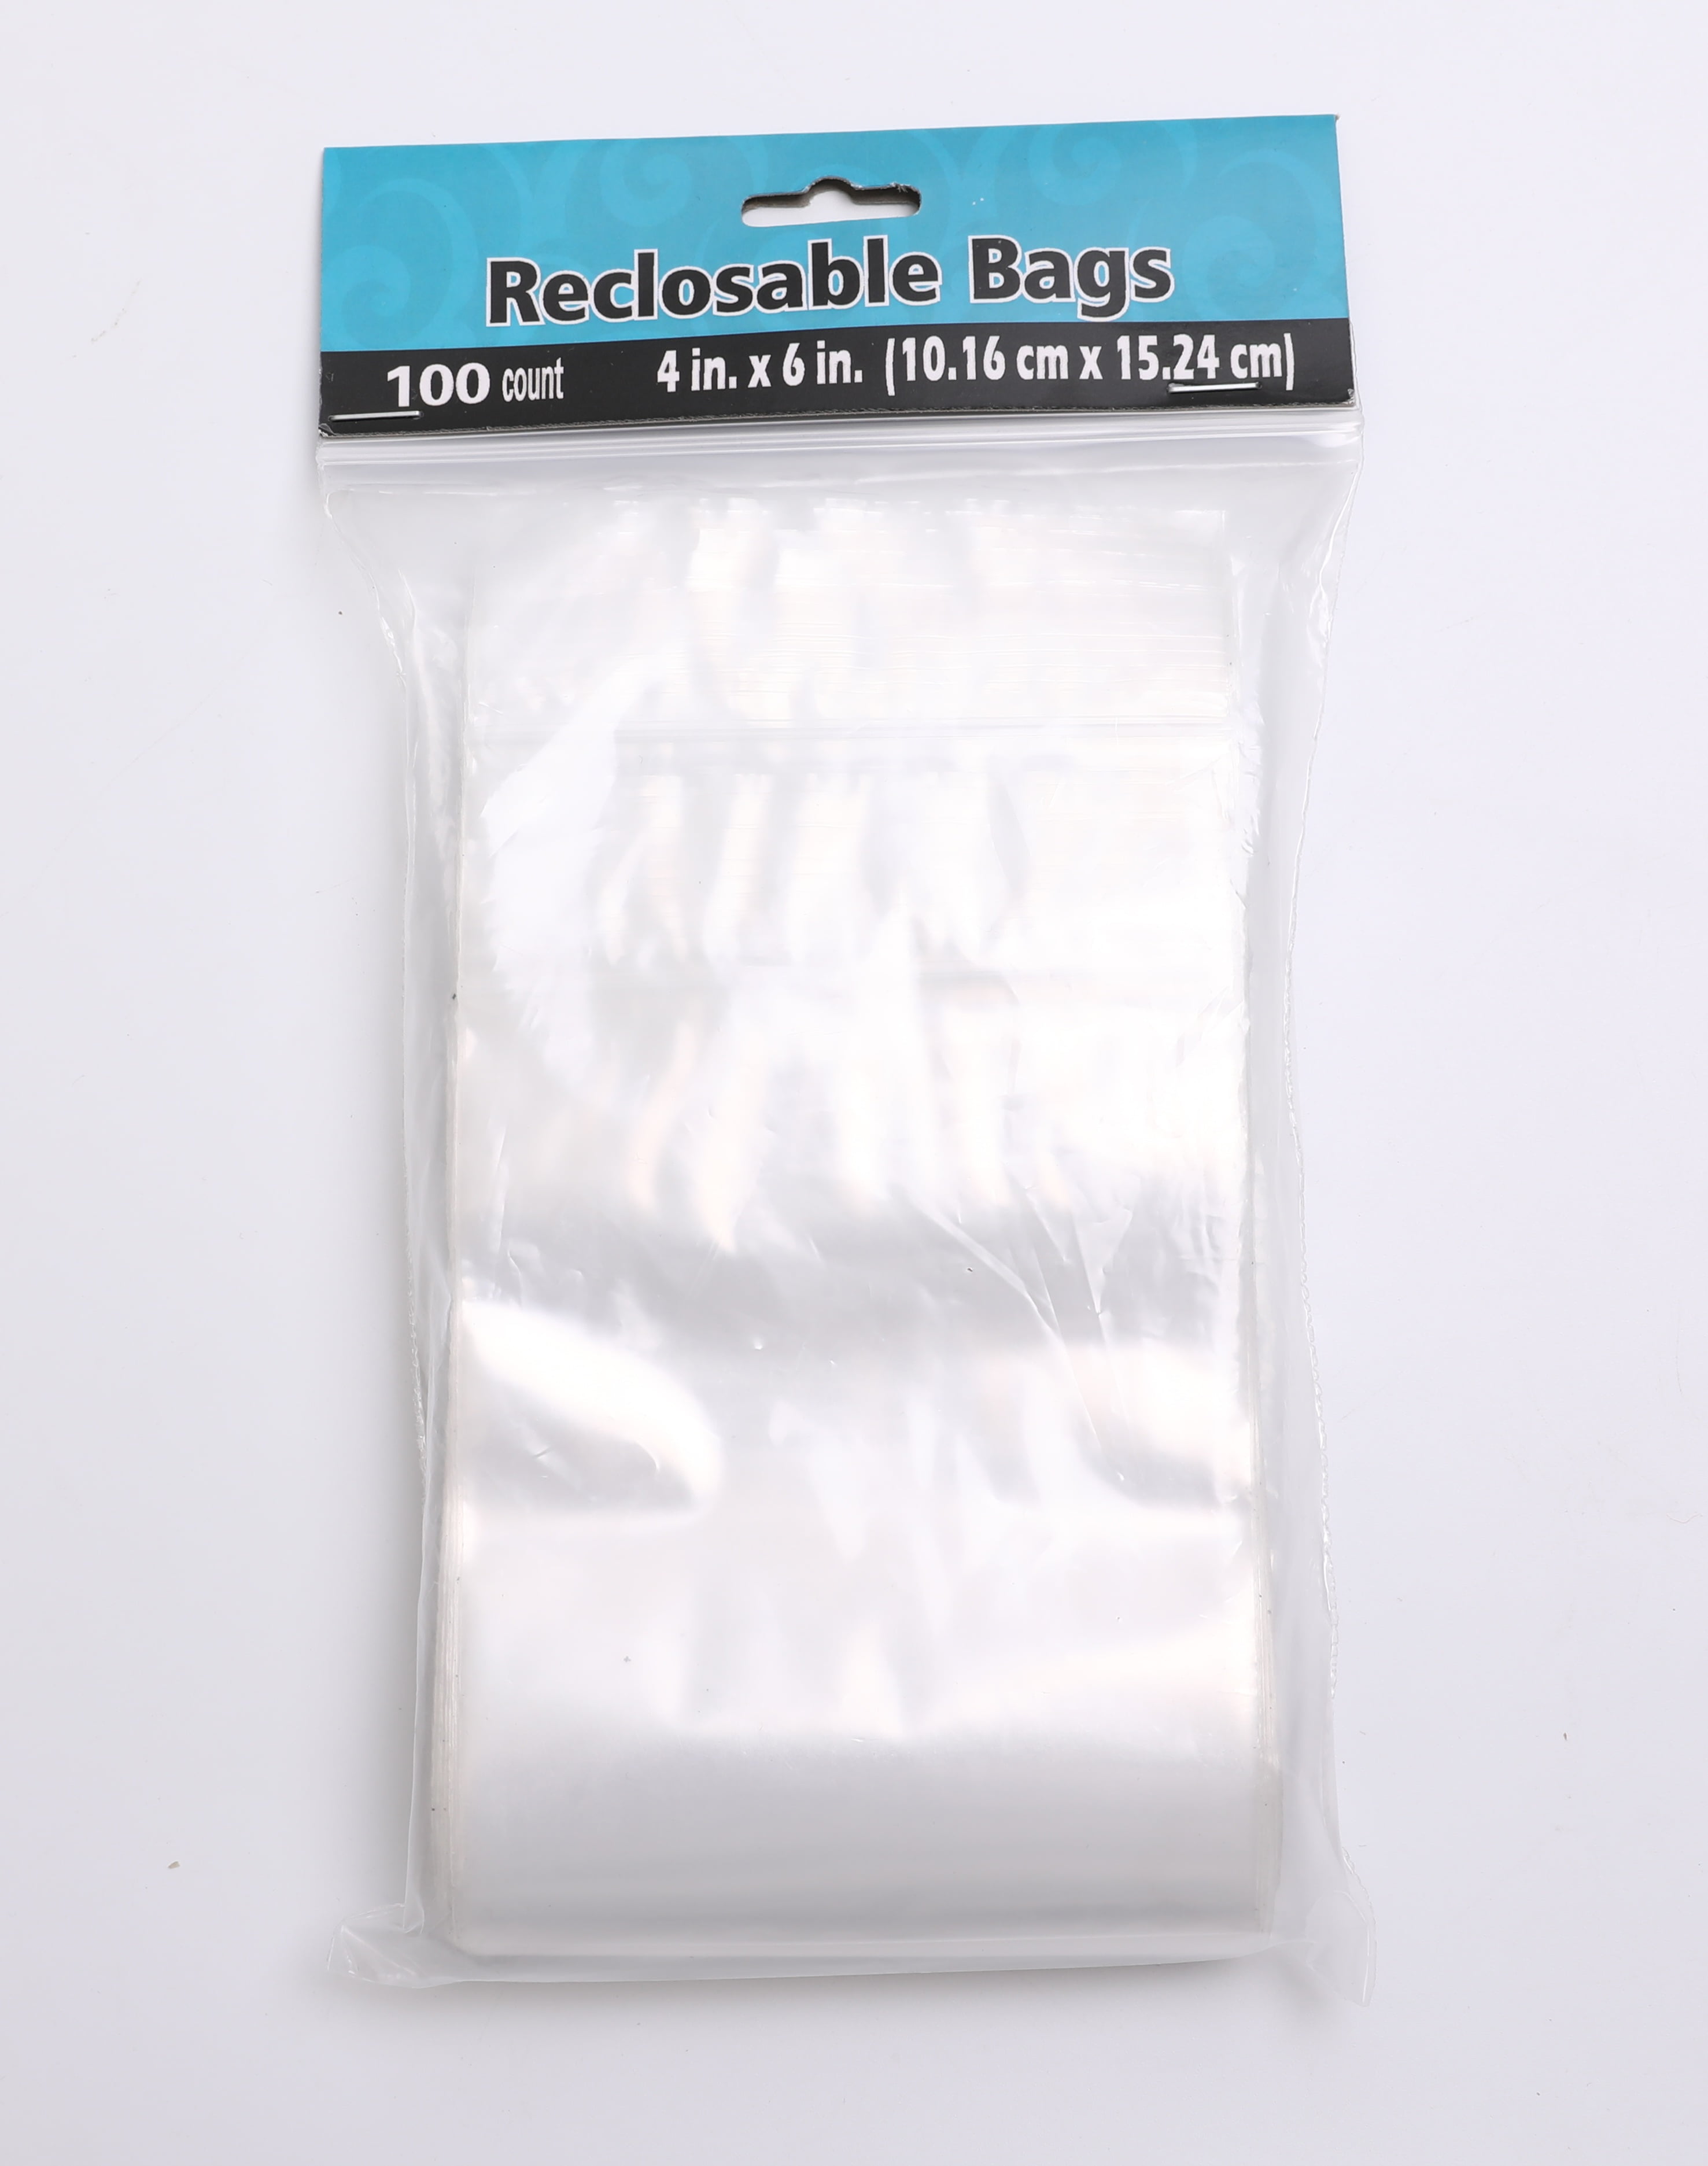 clear plastic bag